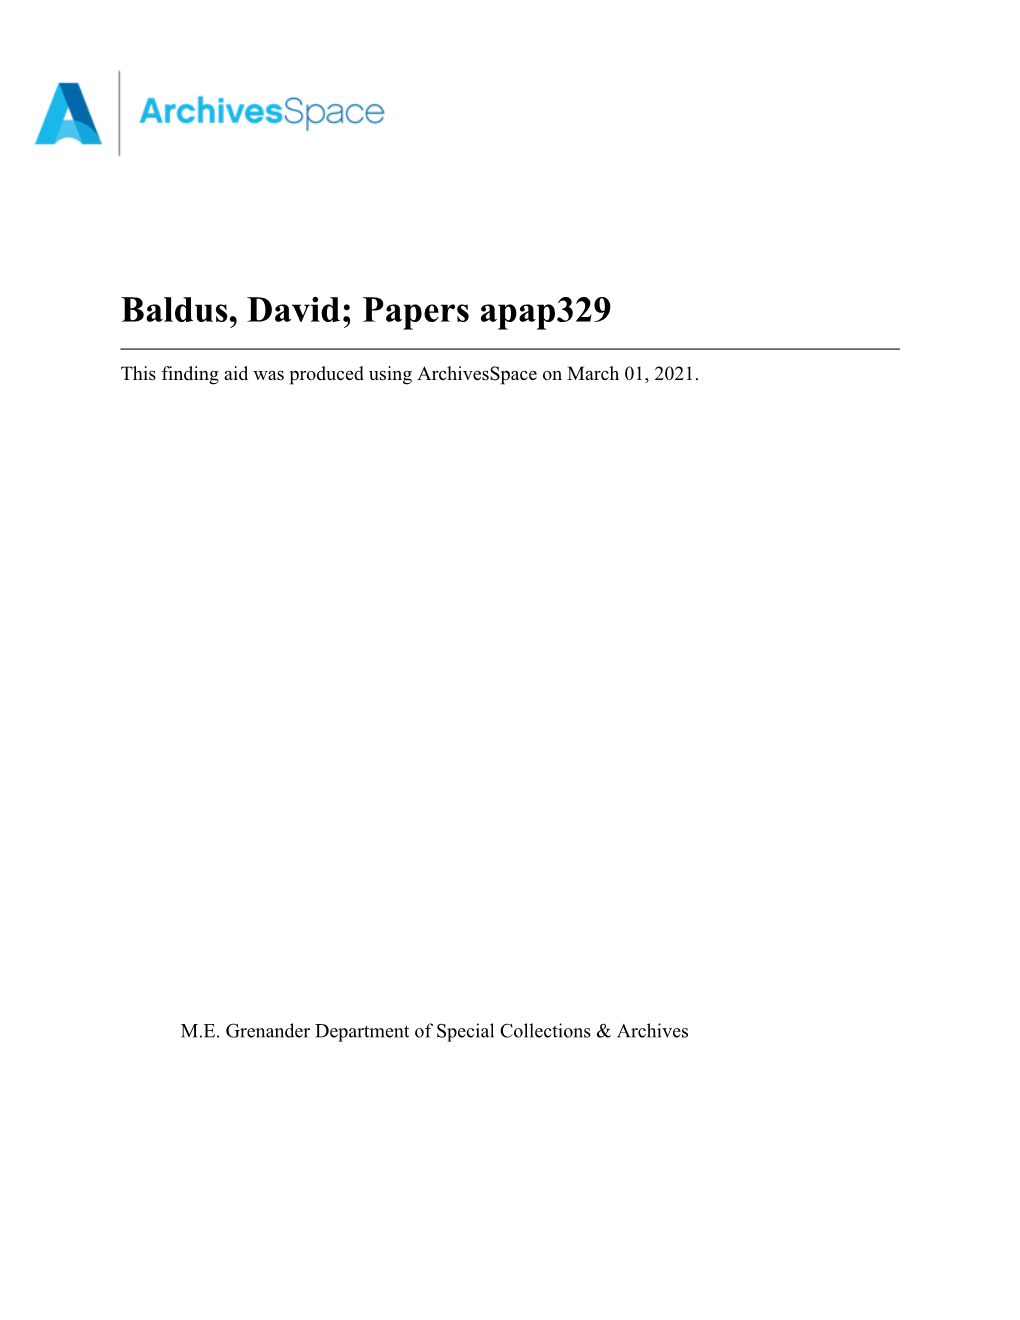 Baldus, David; Papers Apap329